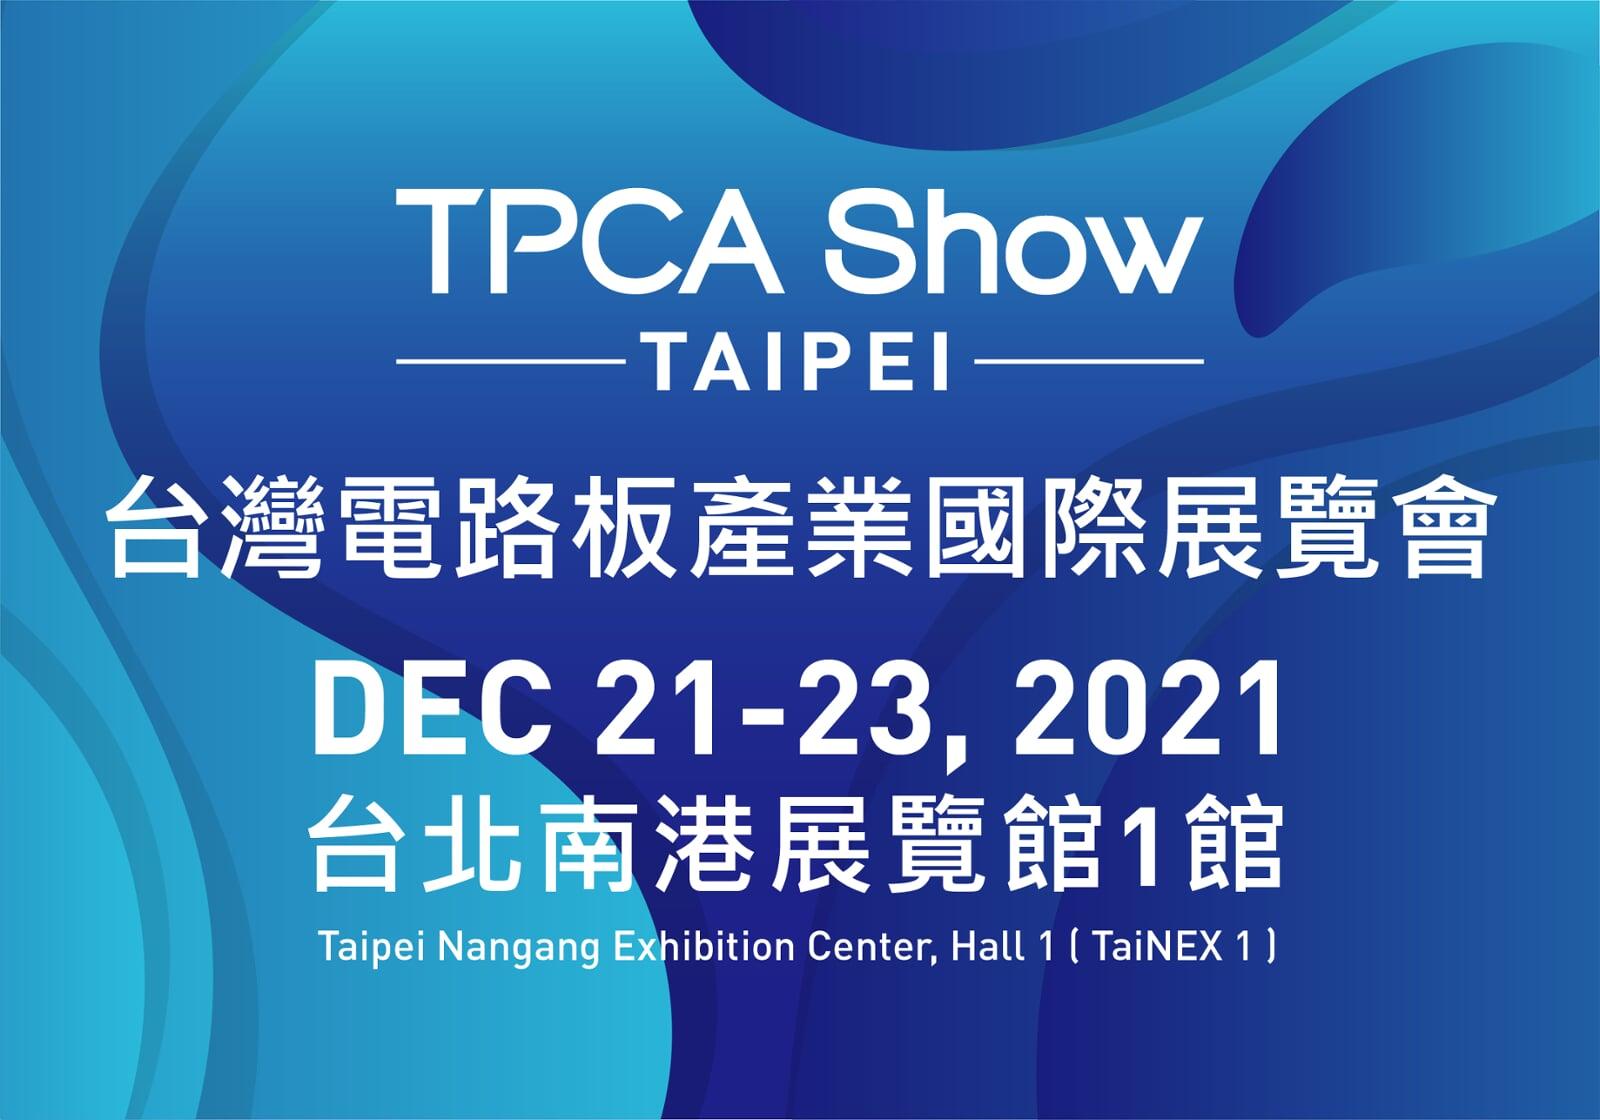 TPCA Show Taipei